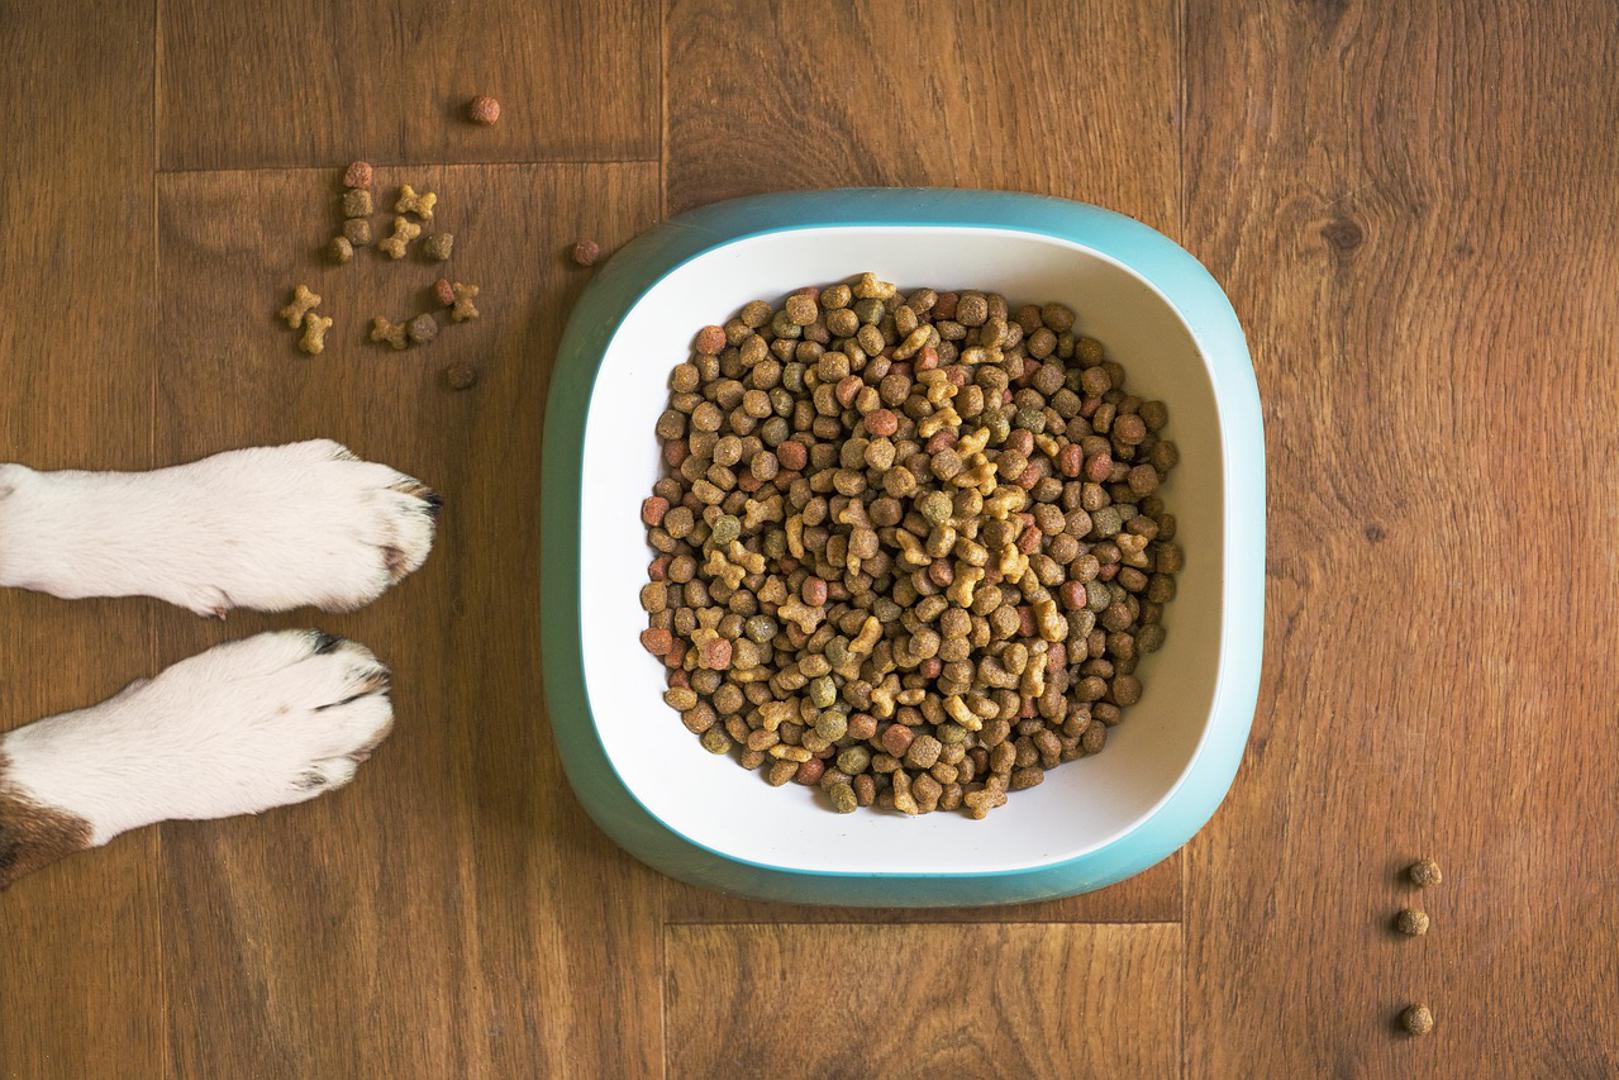 11. Postoje i ljudi koji isprobavaju hranu za pse. Naime, njih unajmljuju tvrtke koje se bave hranom za kućne ljubimce kako bi testirali kvalitetu njihovih proizvoda. Hranu obično ispljunu nakon što je kušaju.